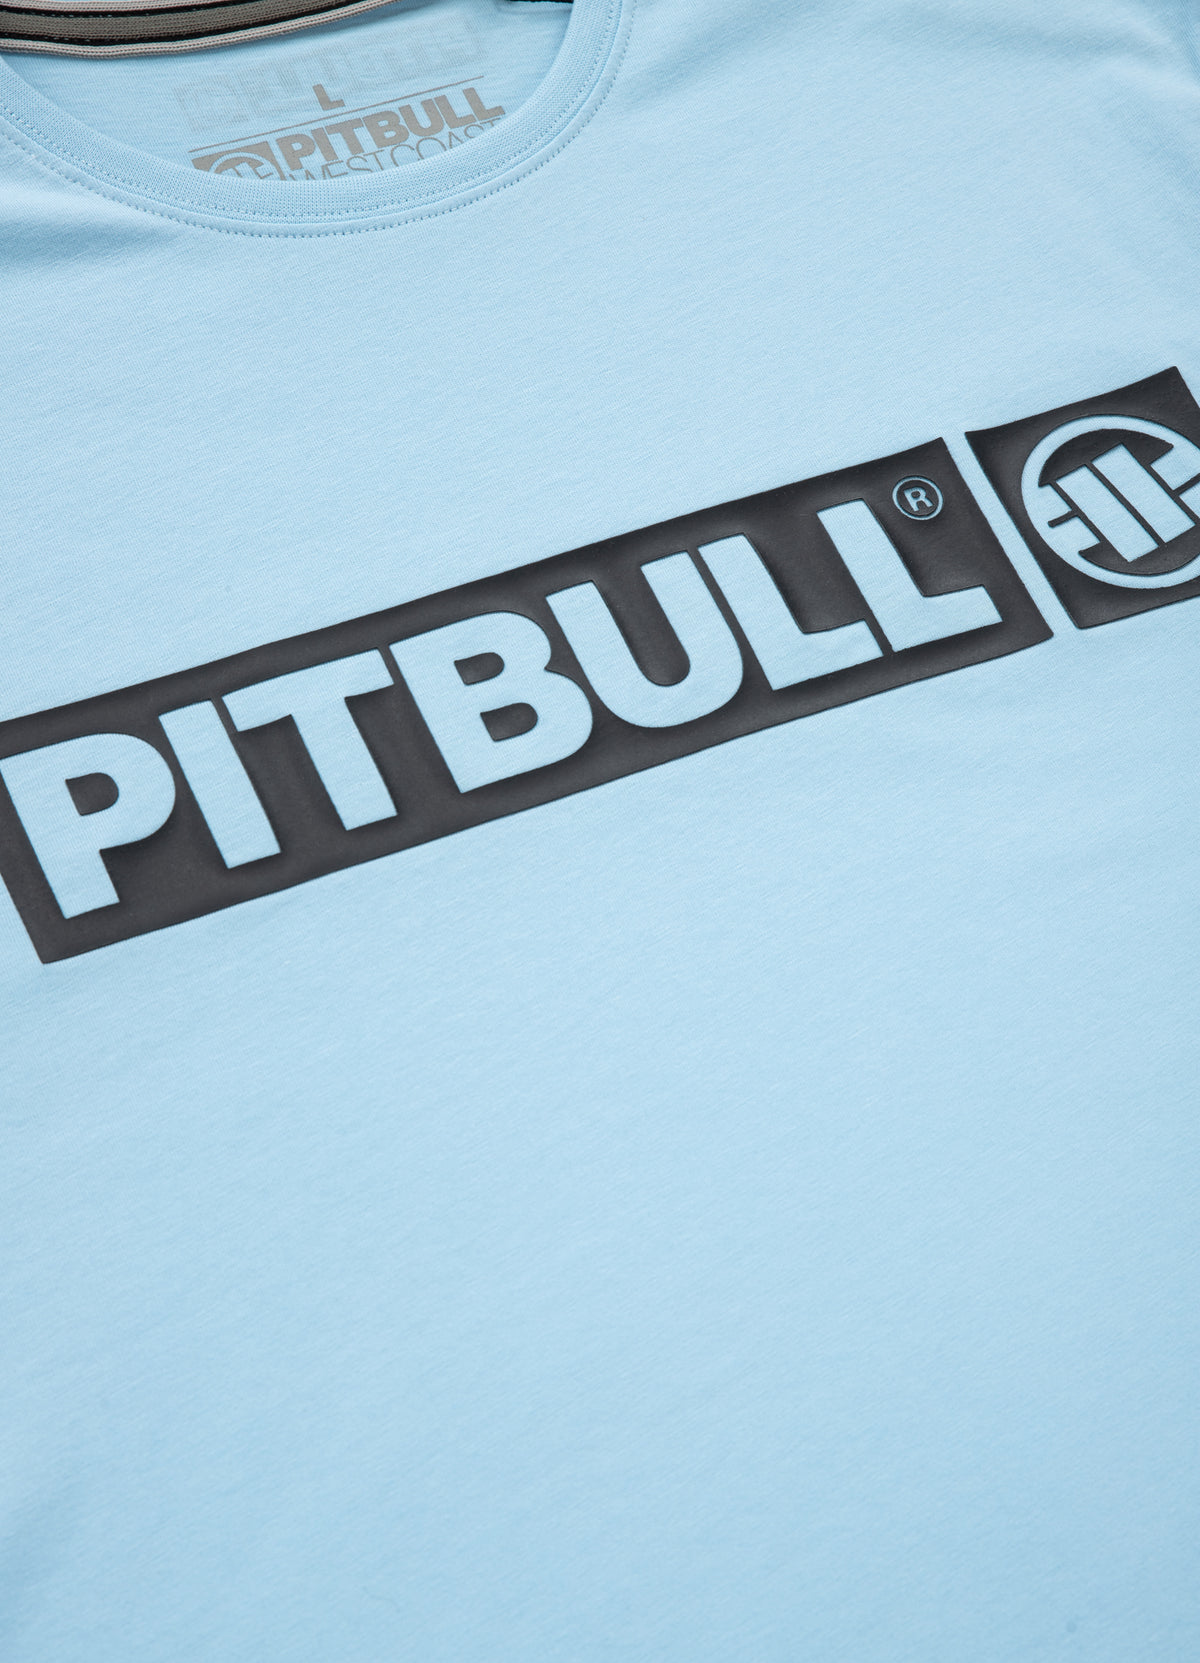 HILLTOP Lightweight Light Blue T-shirt - Pitbullstore.eu